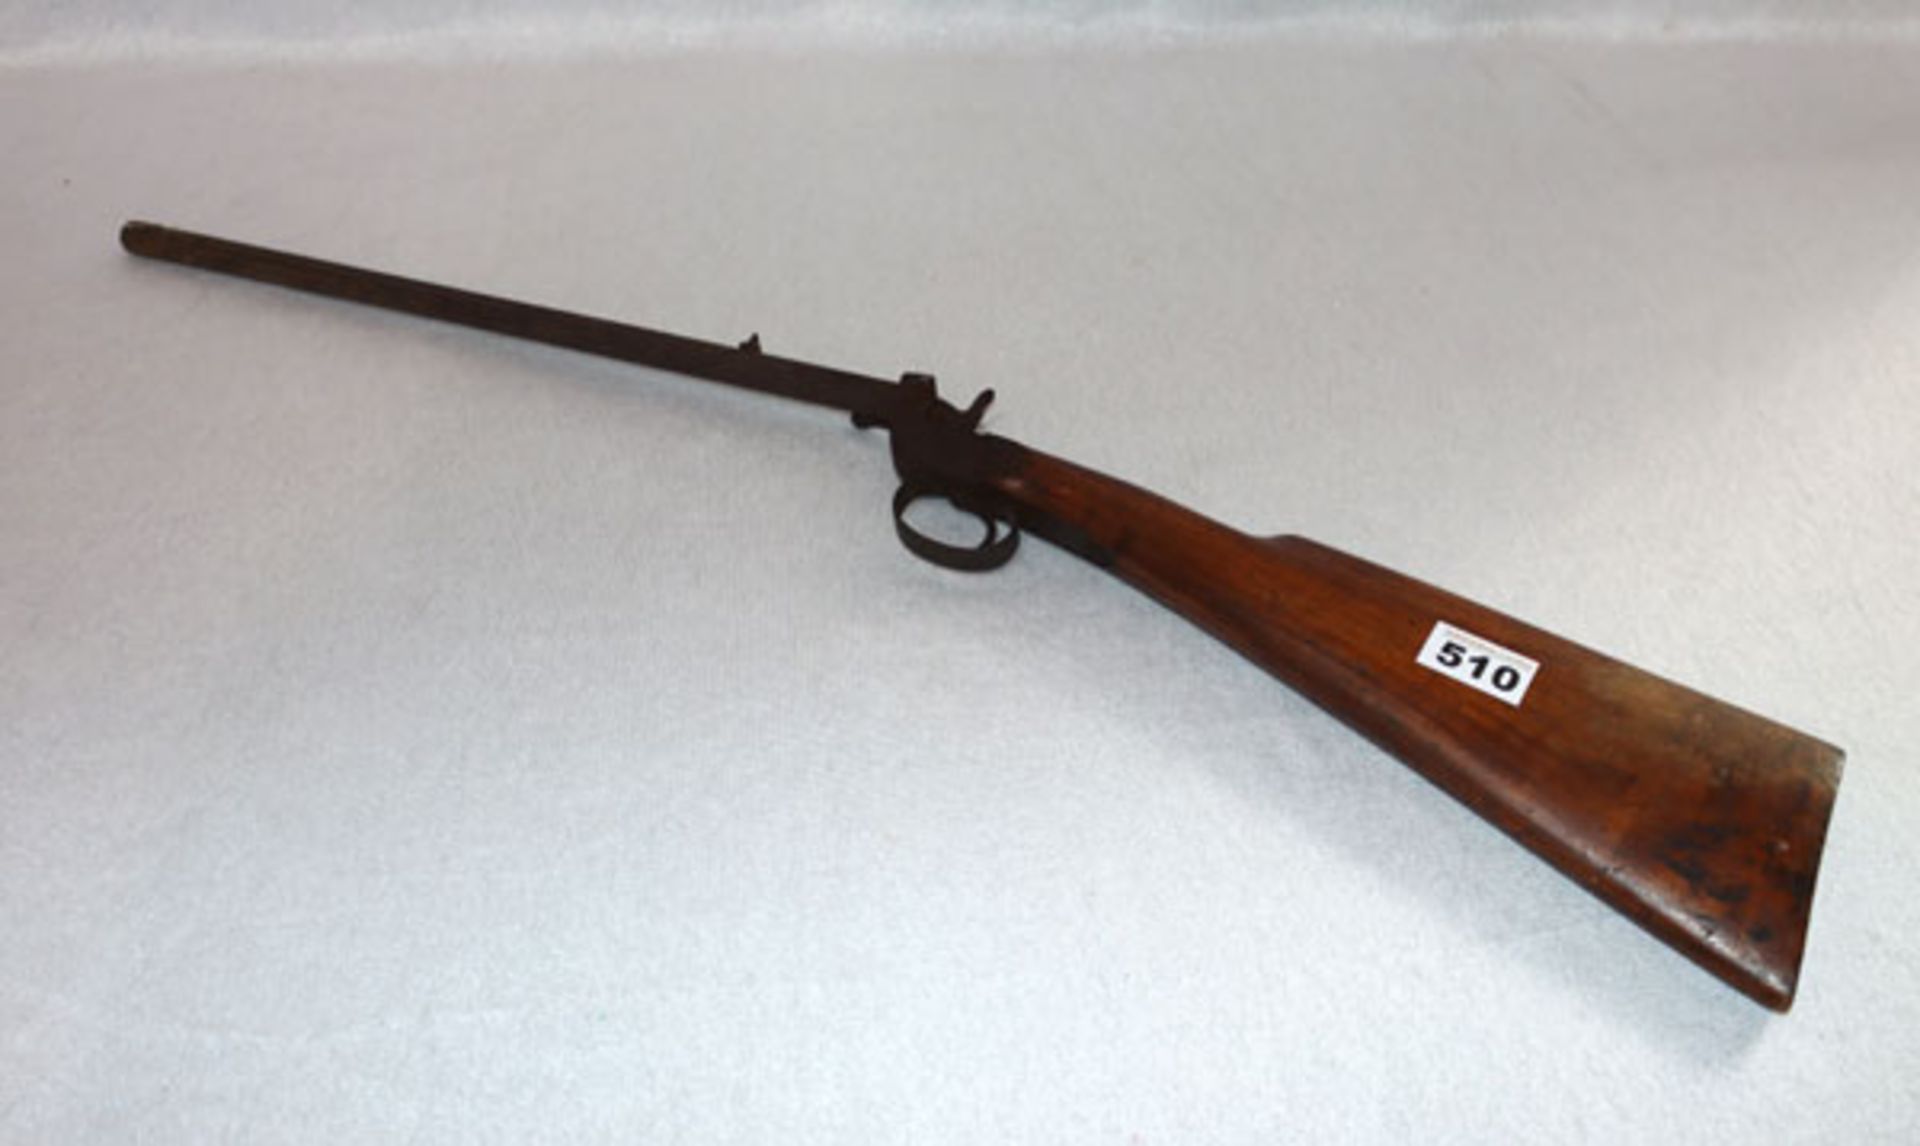 Dekogewehr um 1900, ohne Funktion, teils beschädigt, Altersspuren, L 76 cm